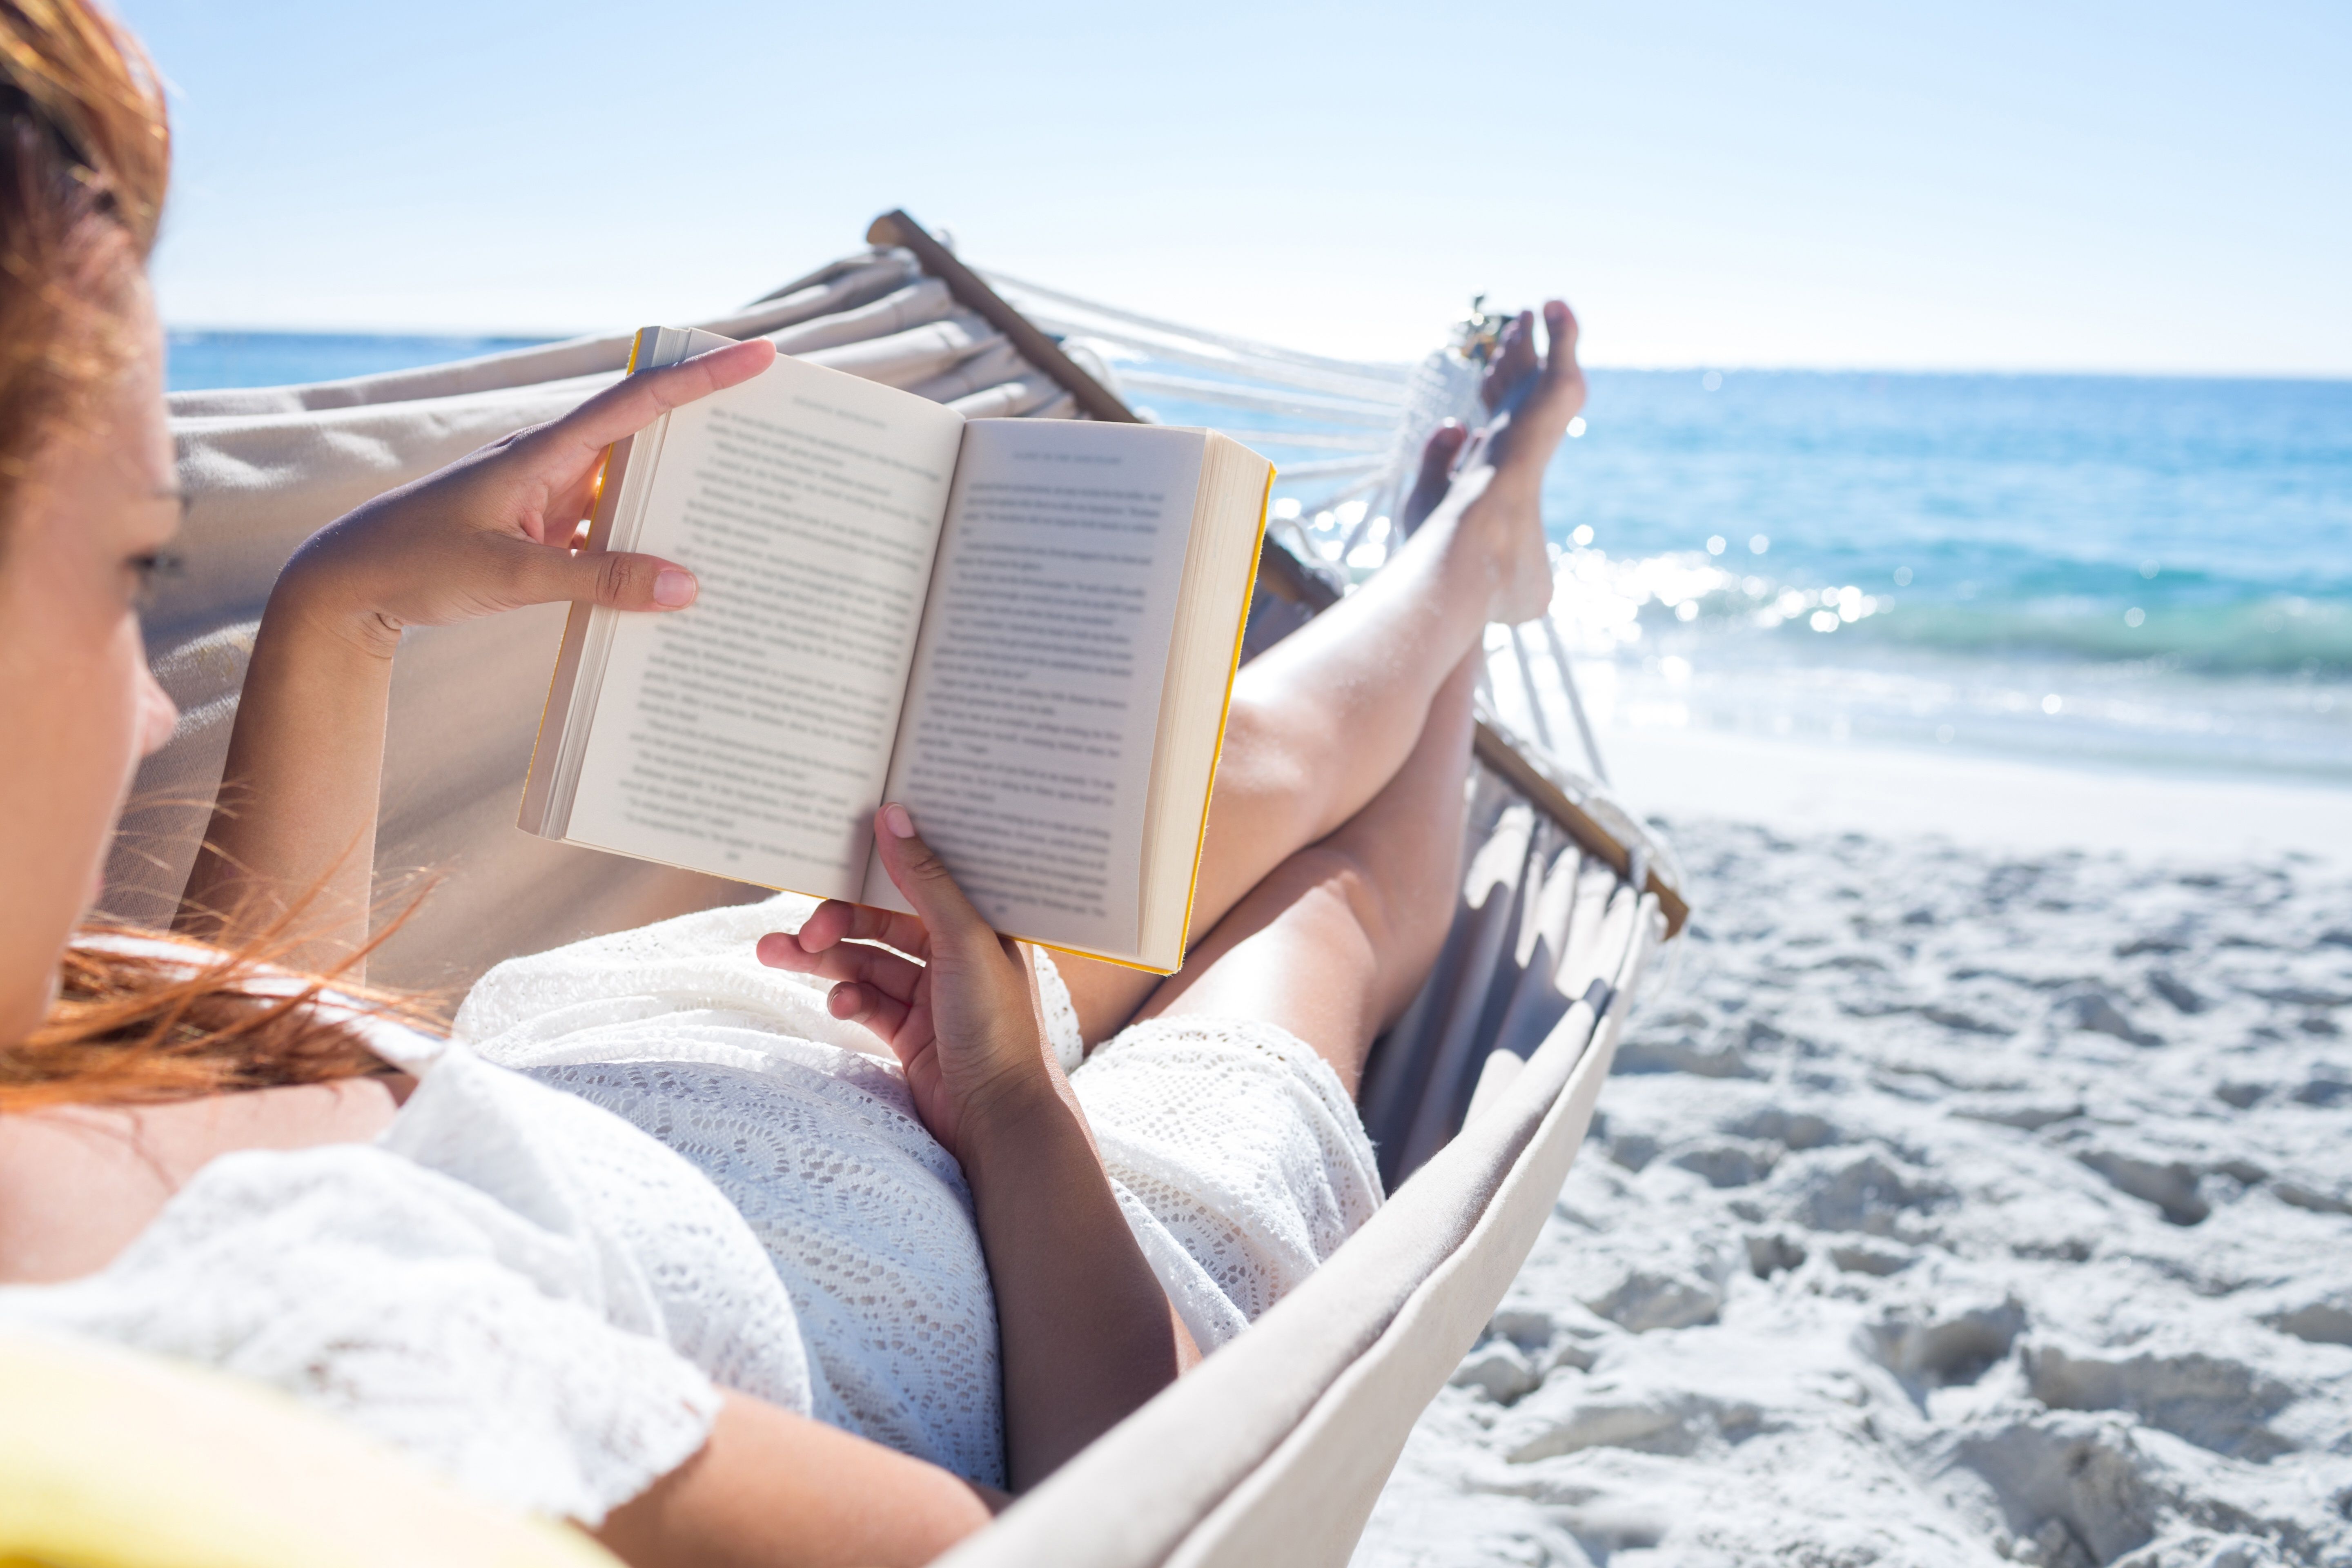 Читать приличный. Чтение на пляже. Лето с книгой. Девушка отдыхает. Лето отпуск.